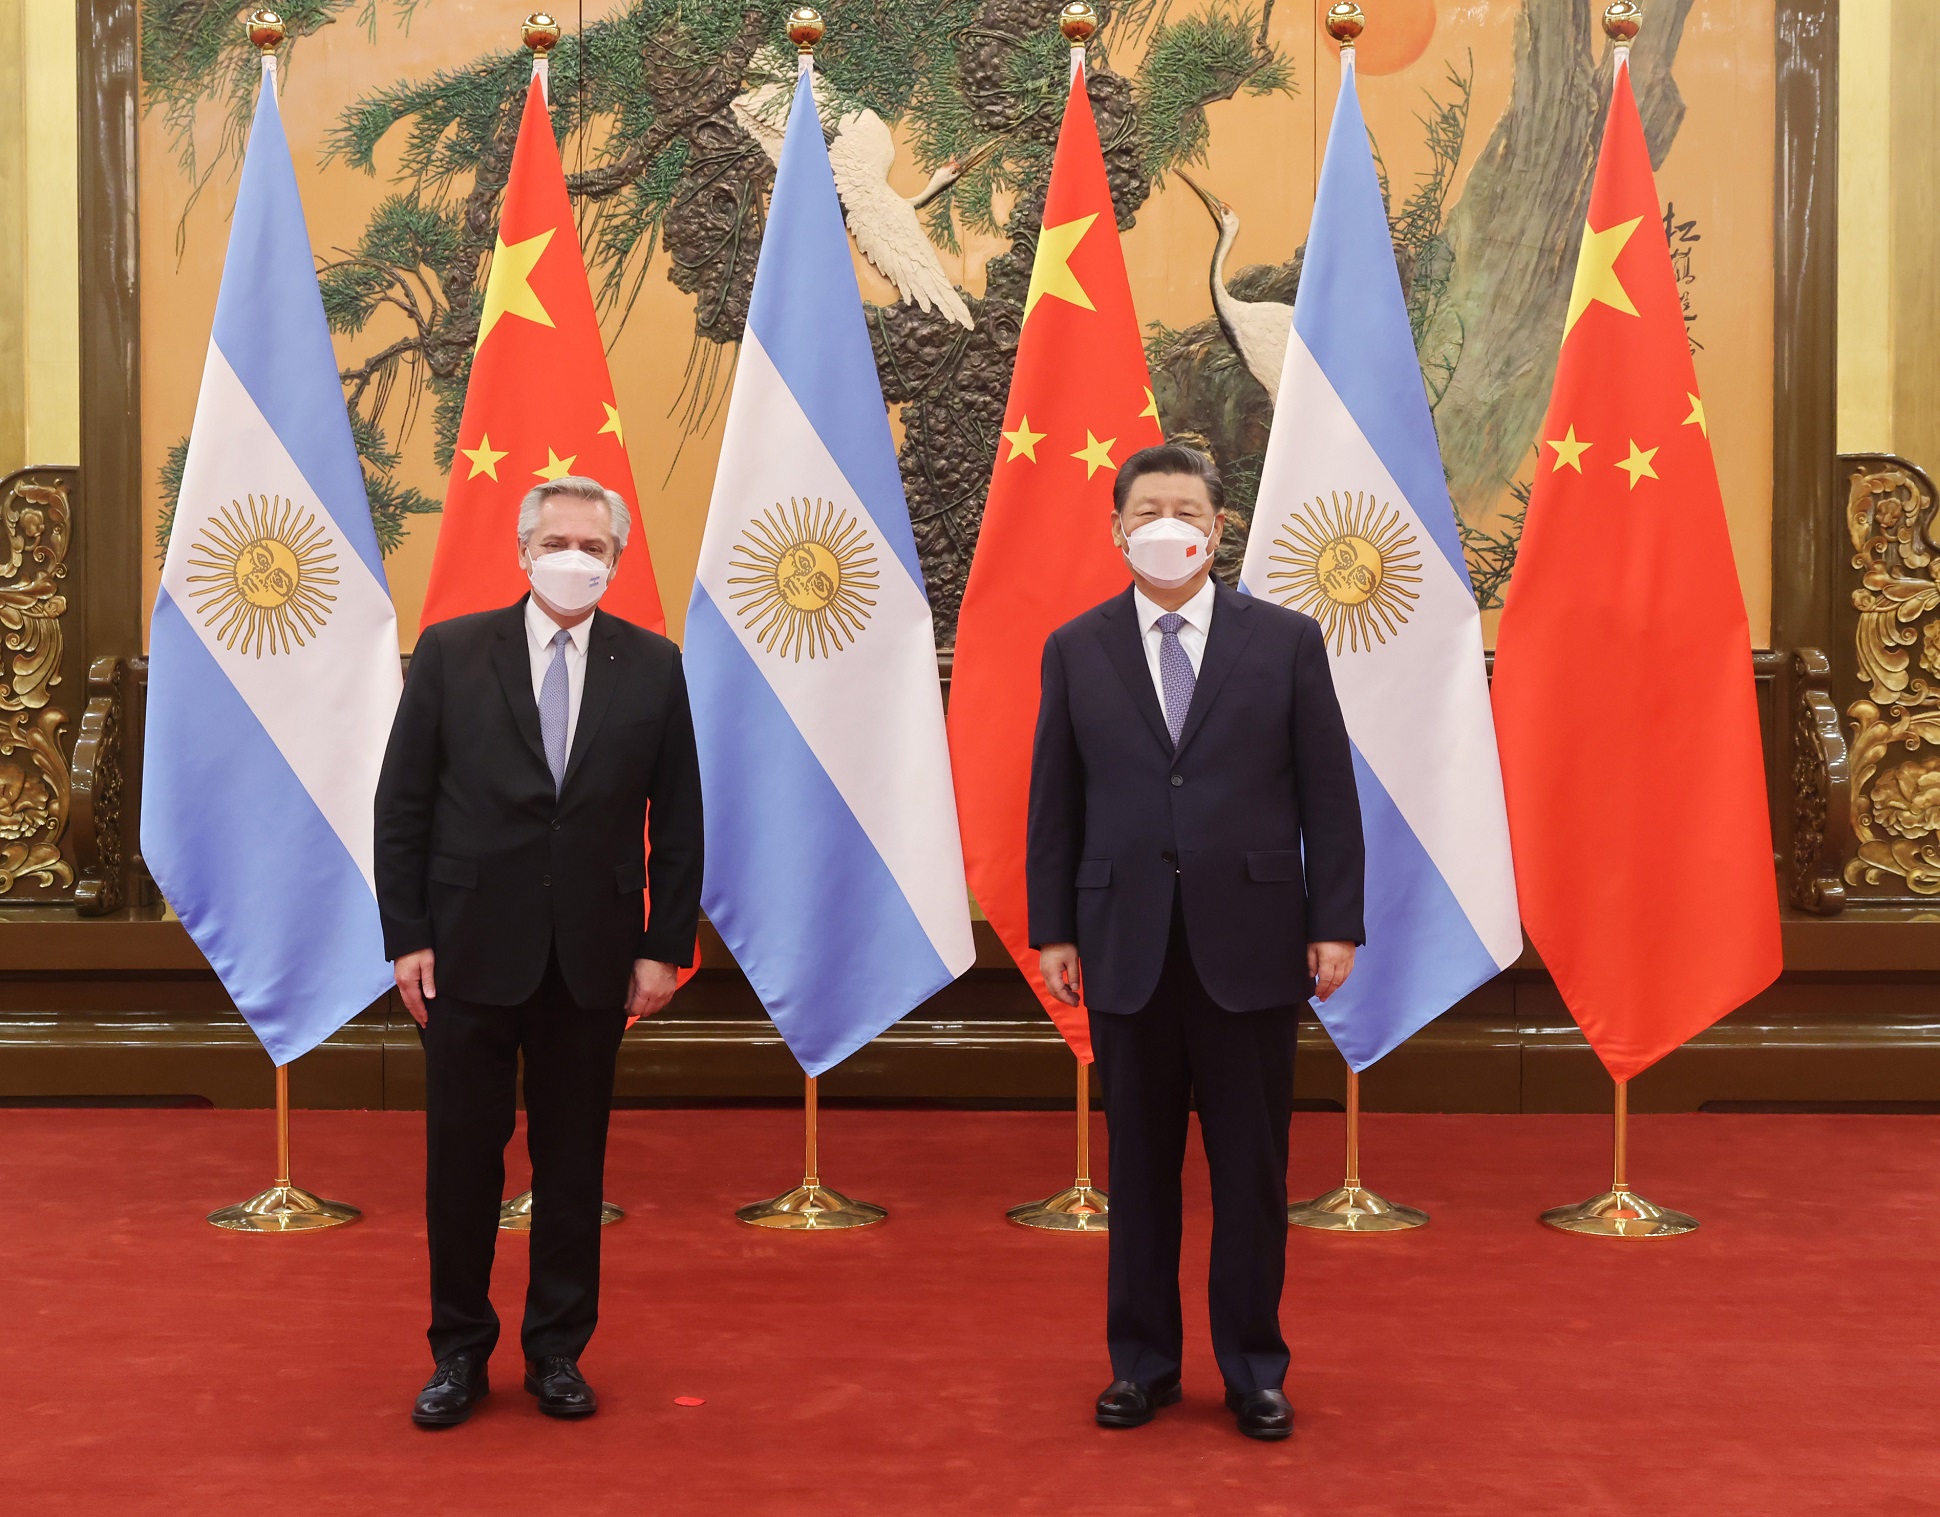 El presidente Alberto Fernández se reunió con Xi Jinping en el Gran Palacio del Pueblo y acordaron la incorporación de la Argentina a la Franja y la Ruta de la Seda 